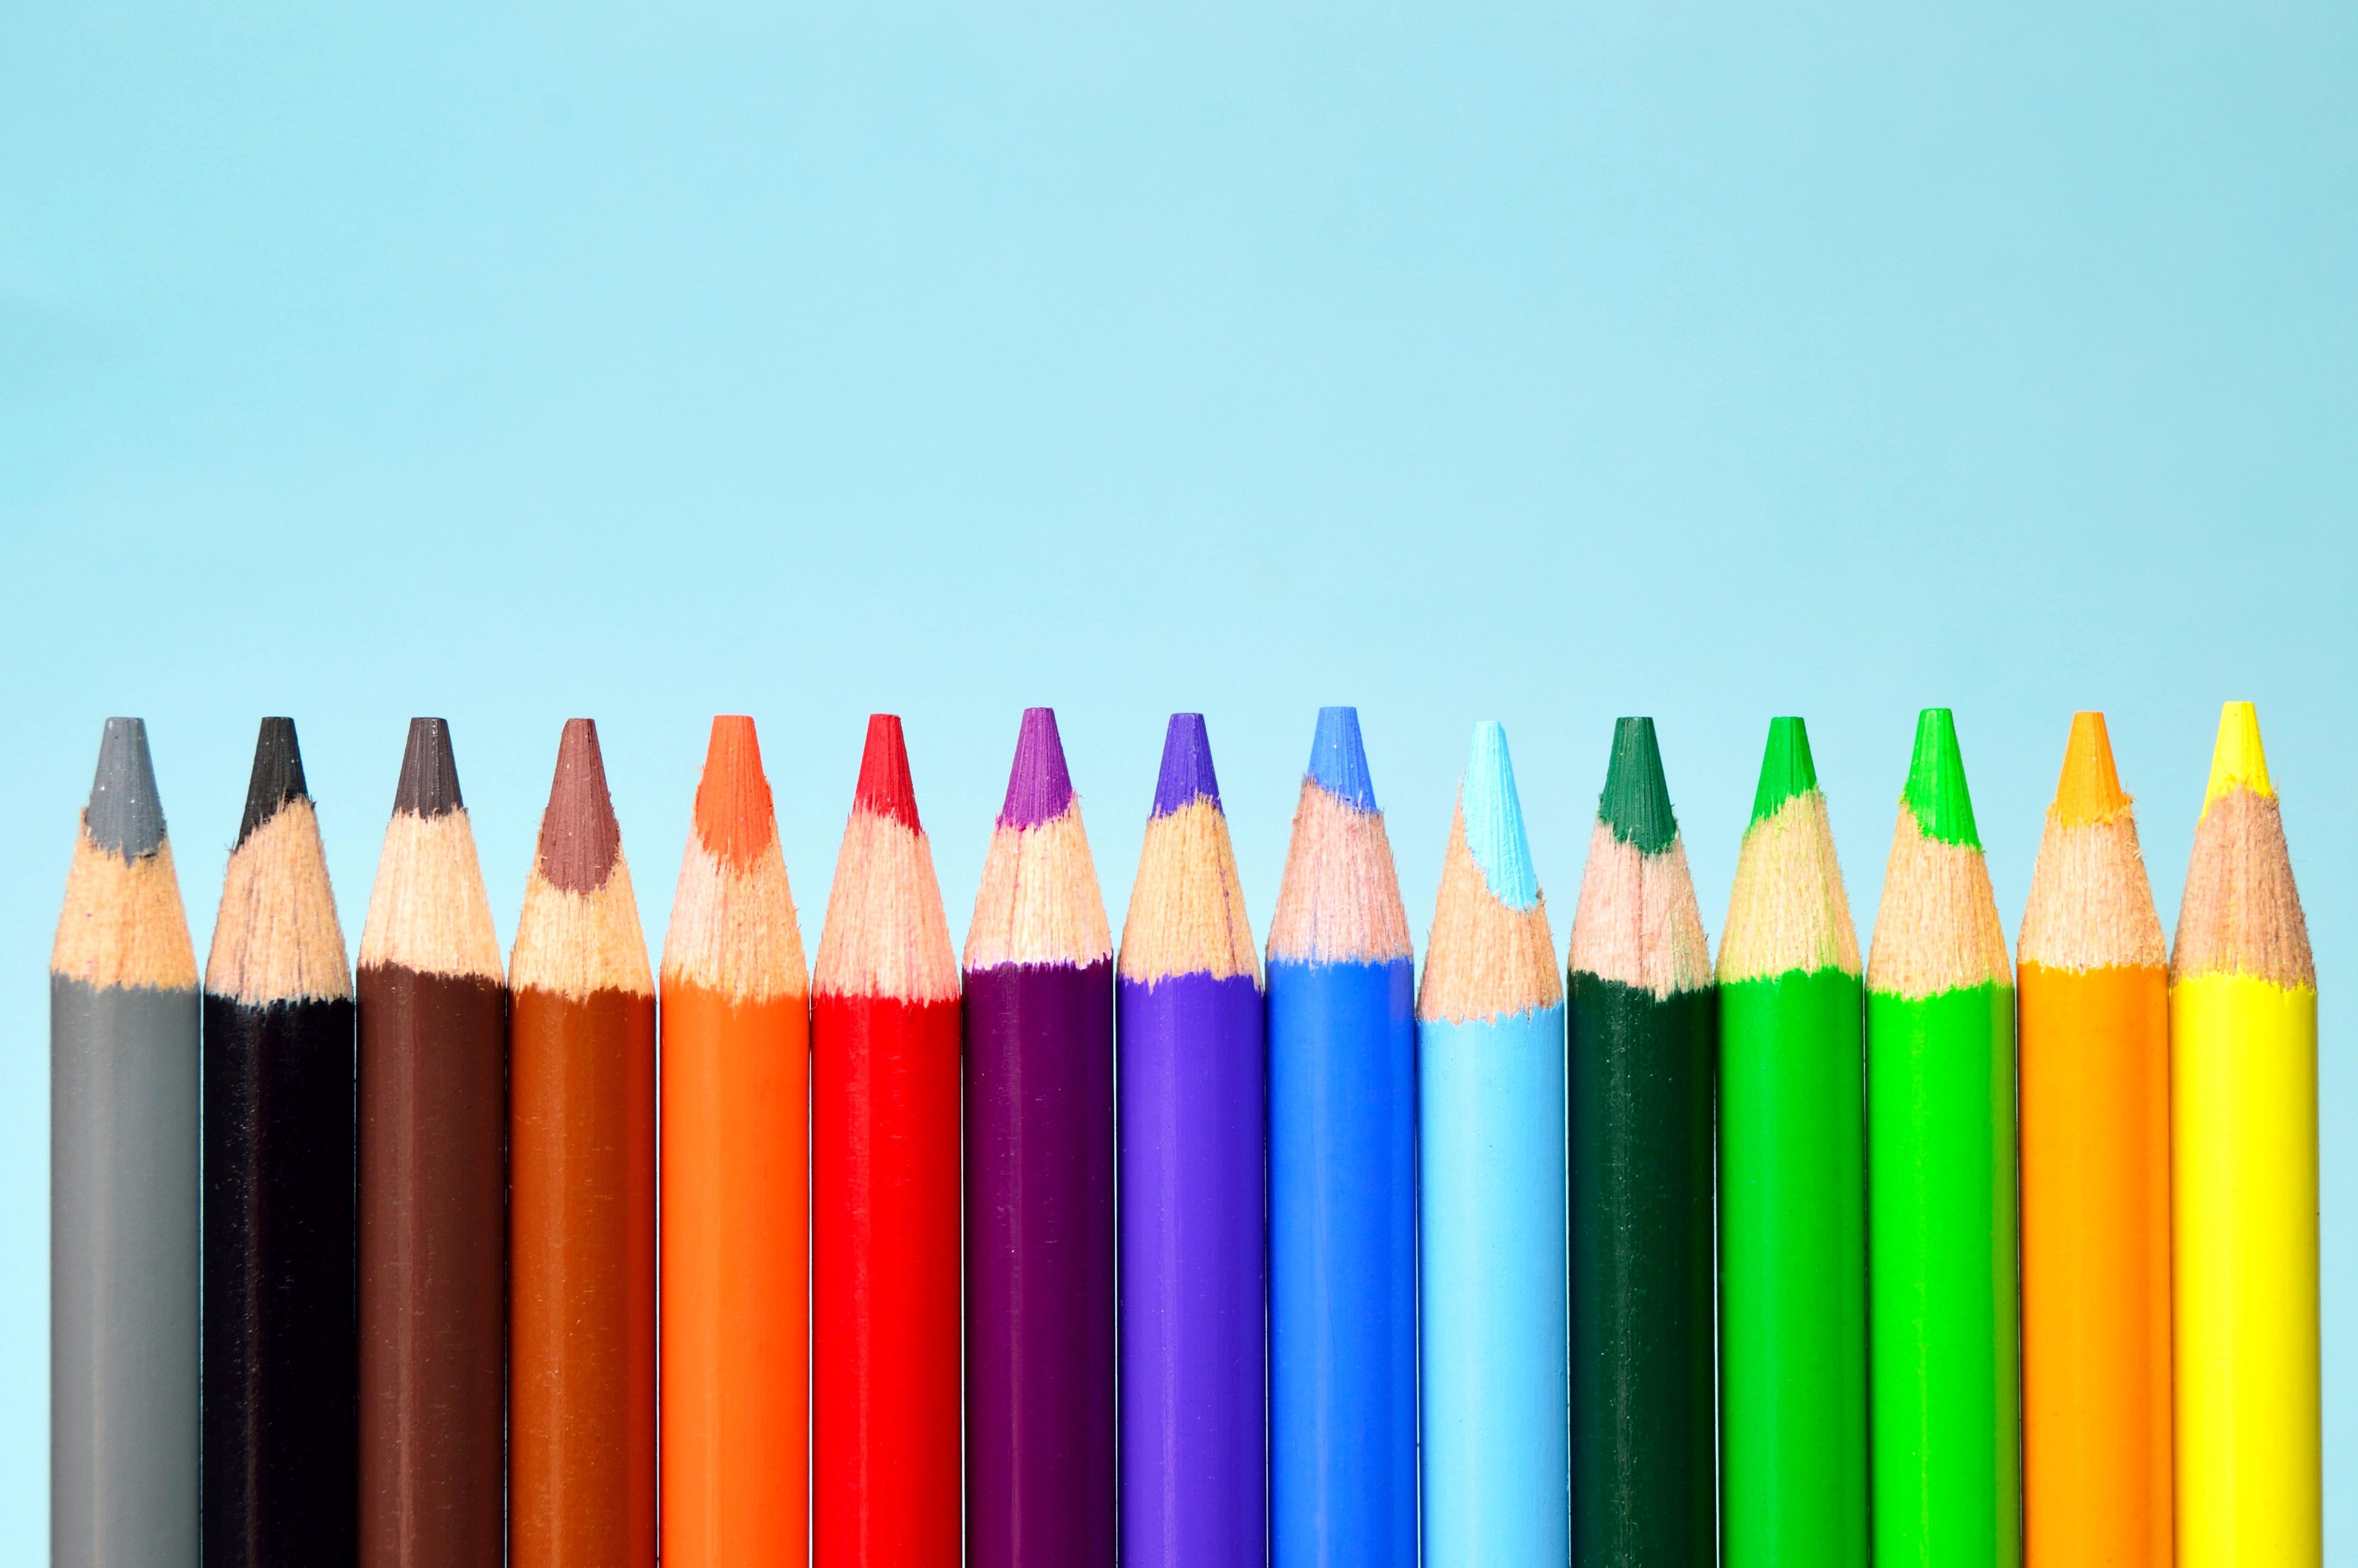 crayola-crayons-120-colors-lazada-ph